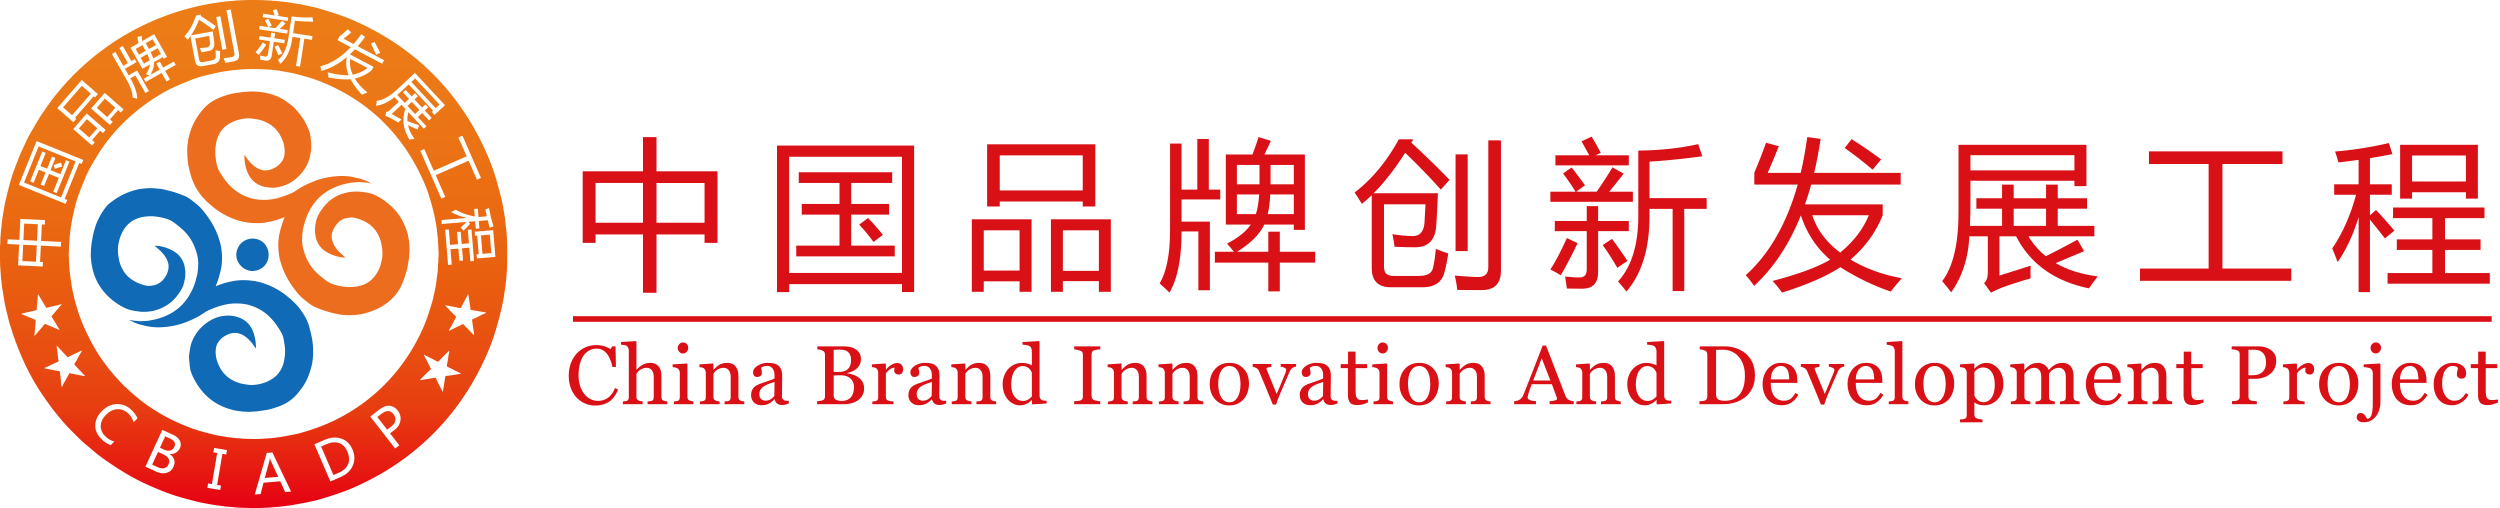 中国品牌创新发展工程